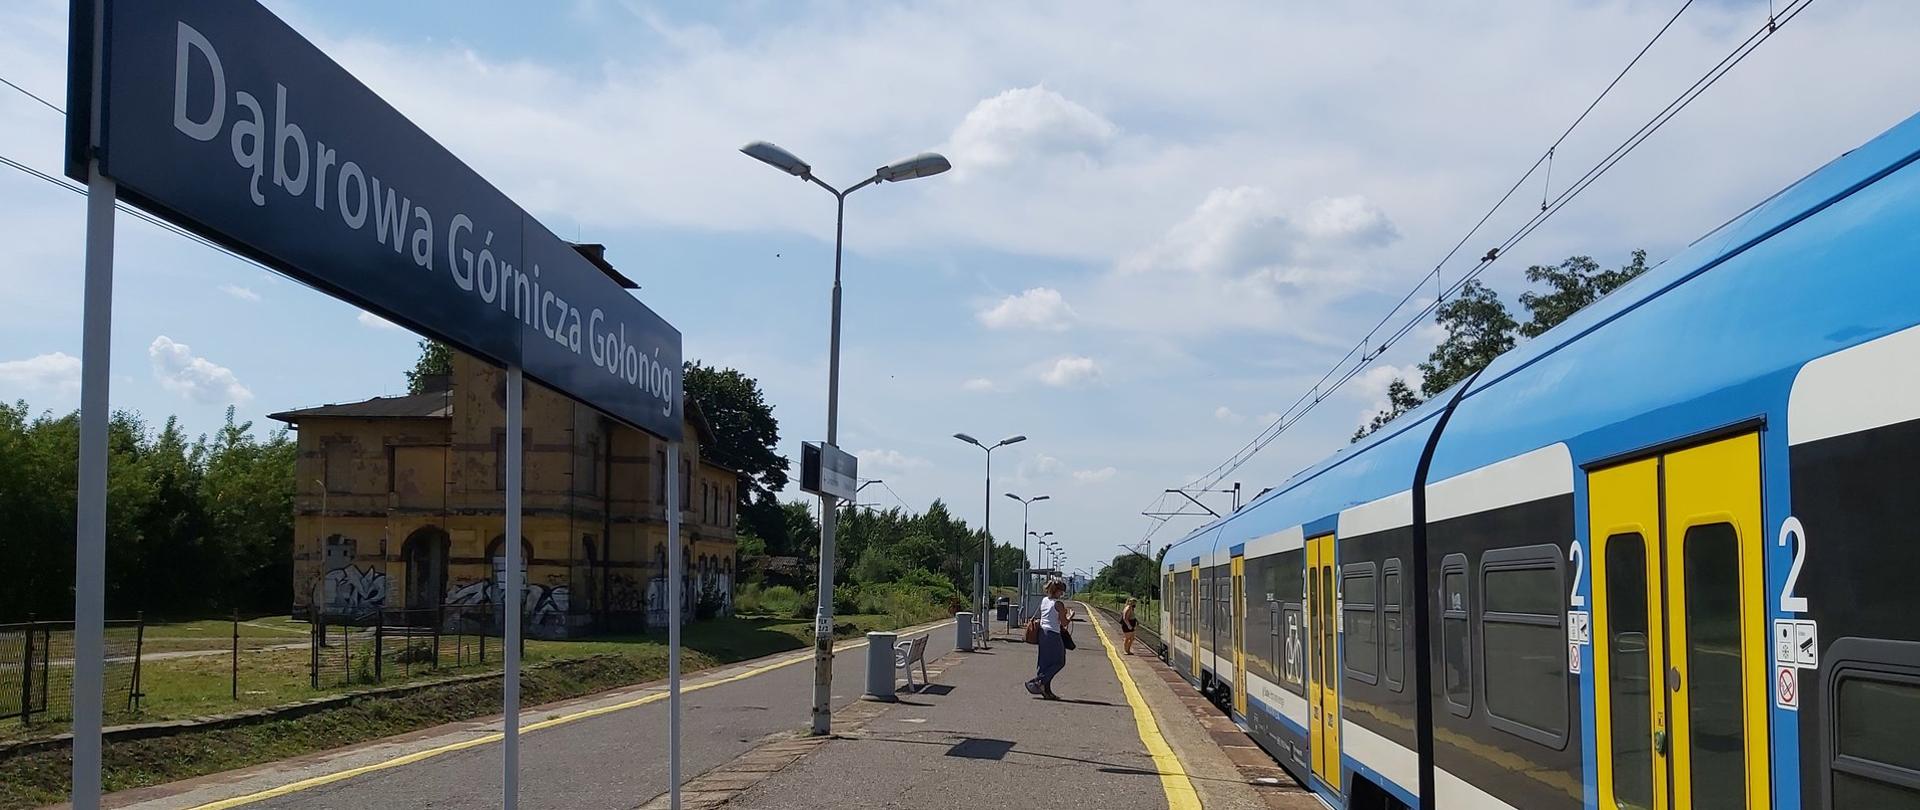 Stacja kolejowa Dąbrowa Górnicza Gołonóg